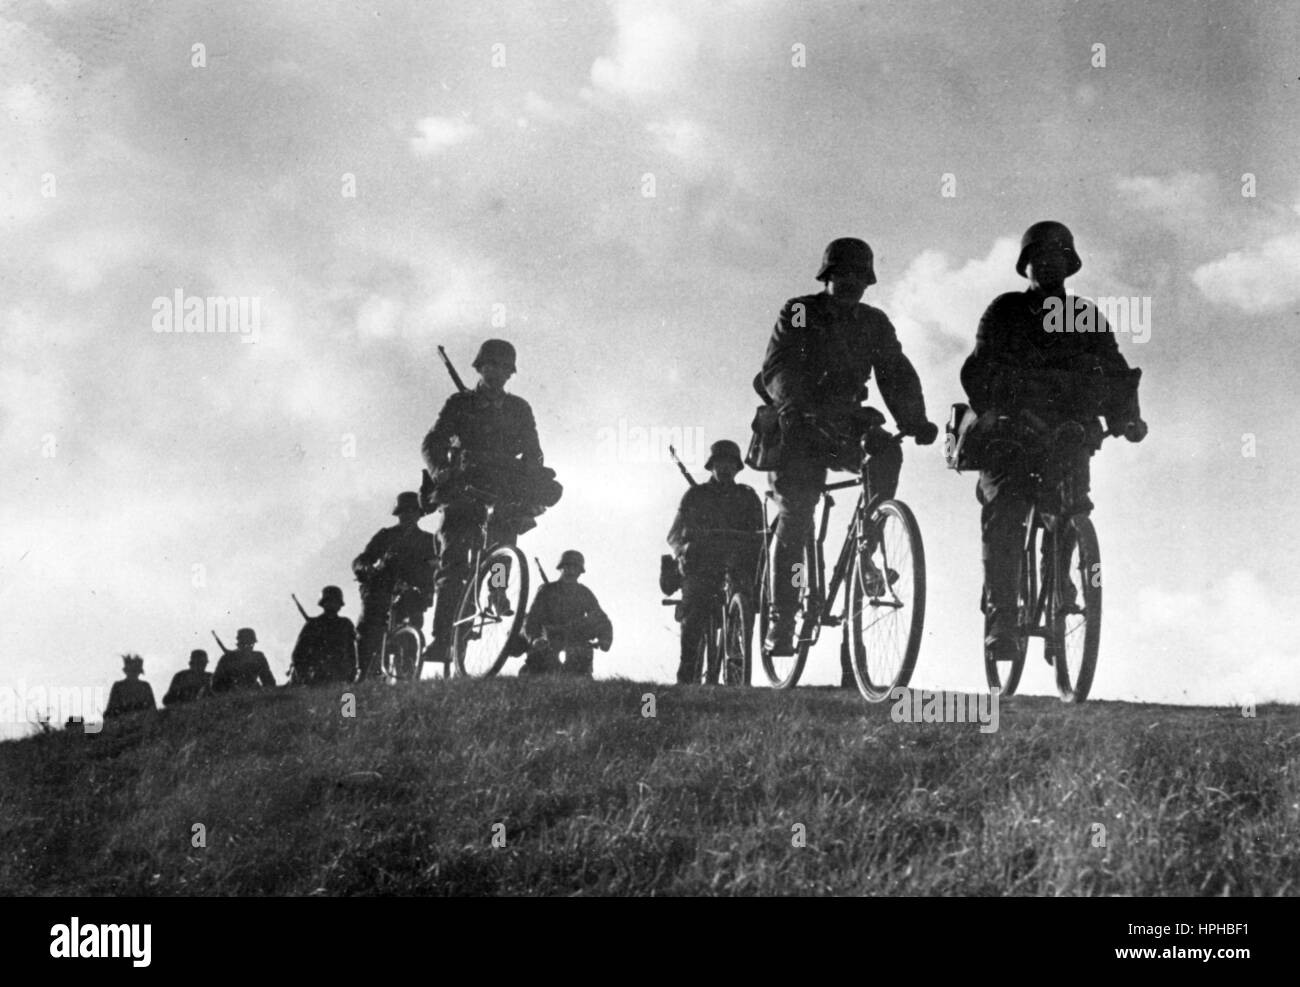 die-ns-propaganda-bild-zeigt-elemente-der-eine-deutsche-wehrmacht-fahrrad-truppe-auf-einer-ubung-veroffentlicht-im-januar-1941-ein-nazi-reporter-hat-auf-der-ruckseite-des-bildes-am-02011941-geschrieben-durch-kontinuierliche-ubungen-die-leistung-unserer-soldaten-erhoht-ein-fahrrad-geschwader-in-der-ausbildung-jedes-hindernis-muss-angegangen-werden-auf-dem-marsch!-foto-berliner-verlag-kein-draht-service-archiv-weltweite-nutzung-hphbf1.jpg